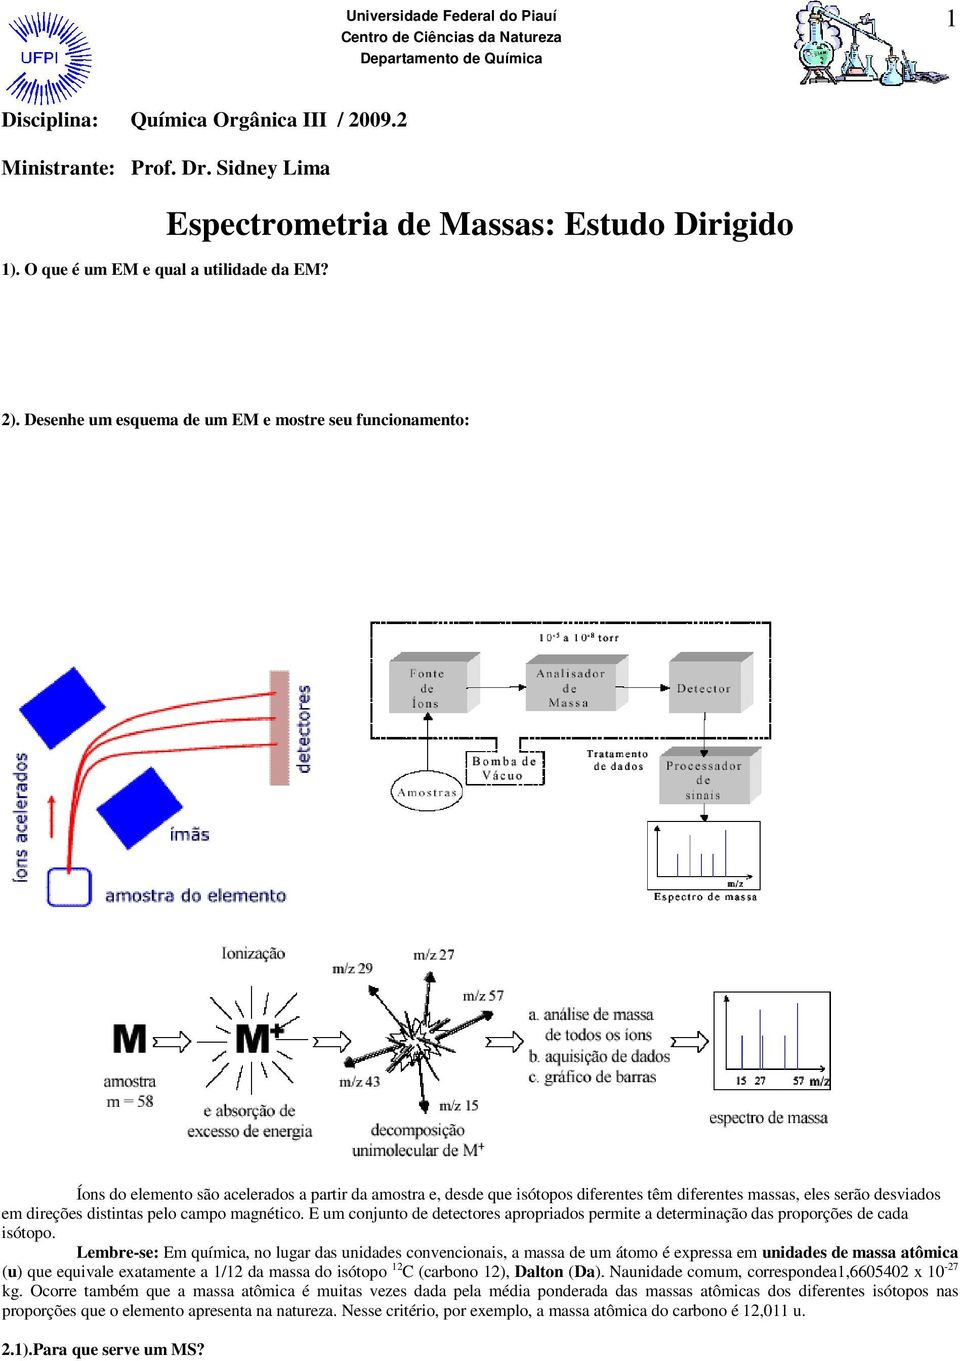 A espectrometria de massas (MS) utiliza o movimento de íons em campos elétricos e magnéticos para classificá-los de acordo com sua relação massa -carga.